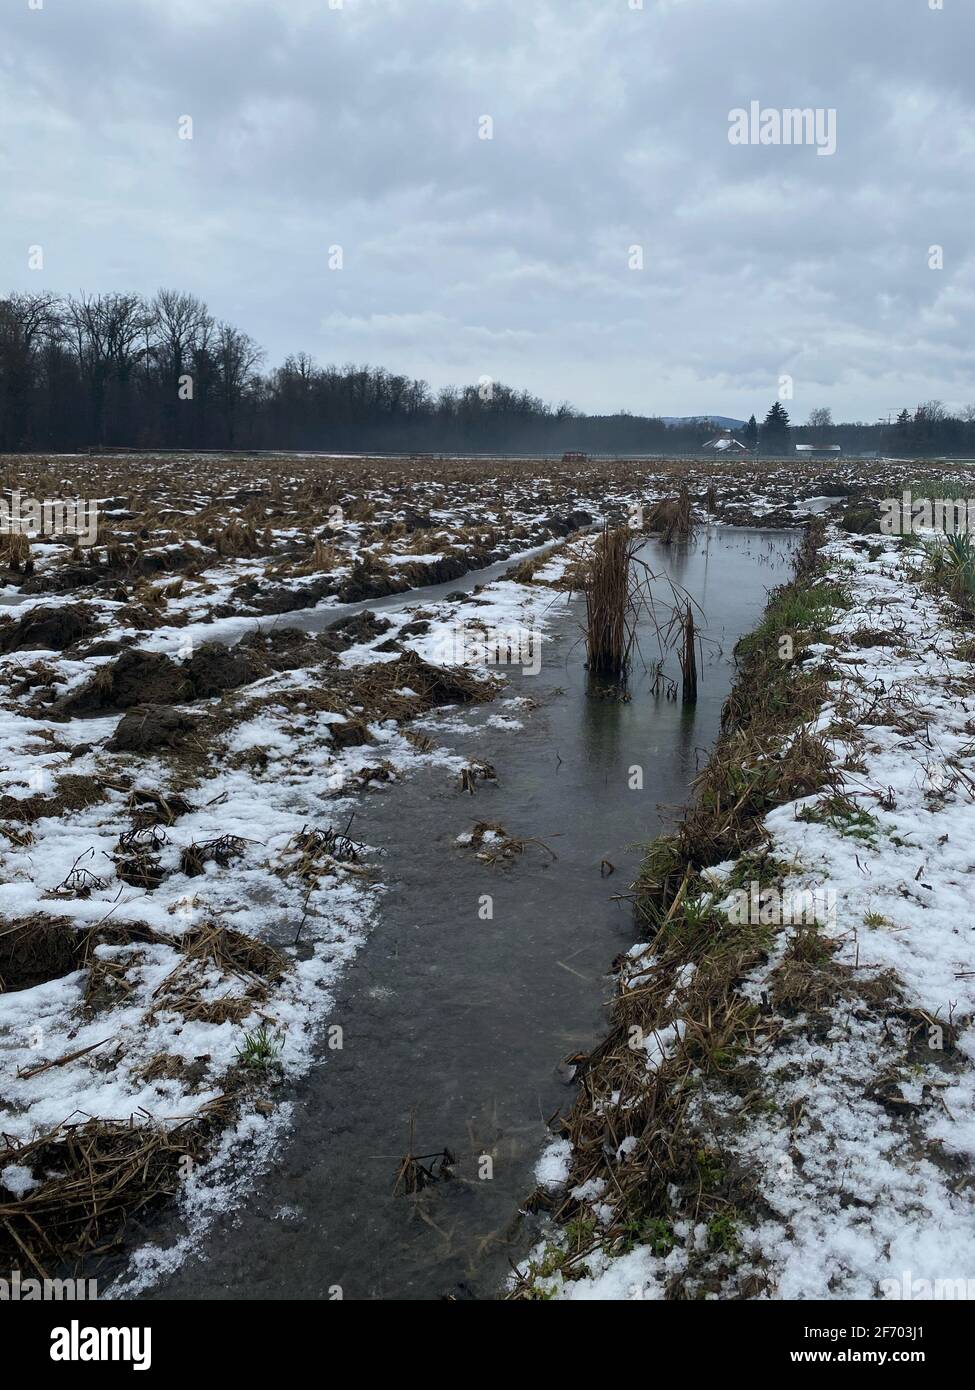 Testfeld von Reis in Brugg Schweiz im Winter. Experimentieren Sie mit wachsenden Bedingungen. Vertikales Foto. Stockfoto